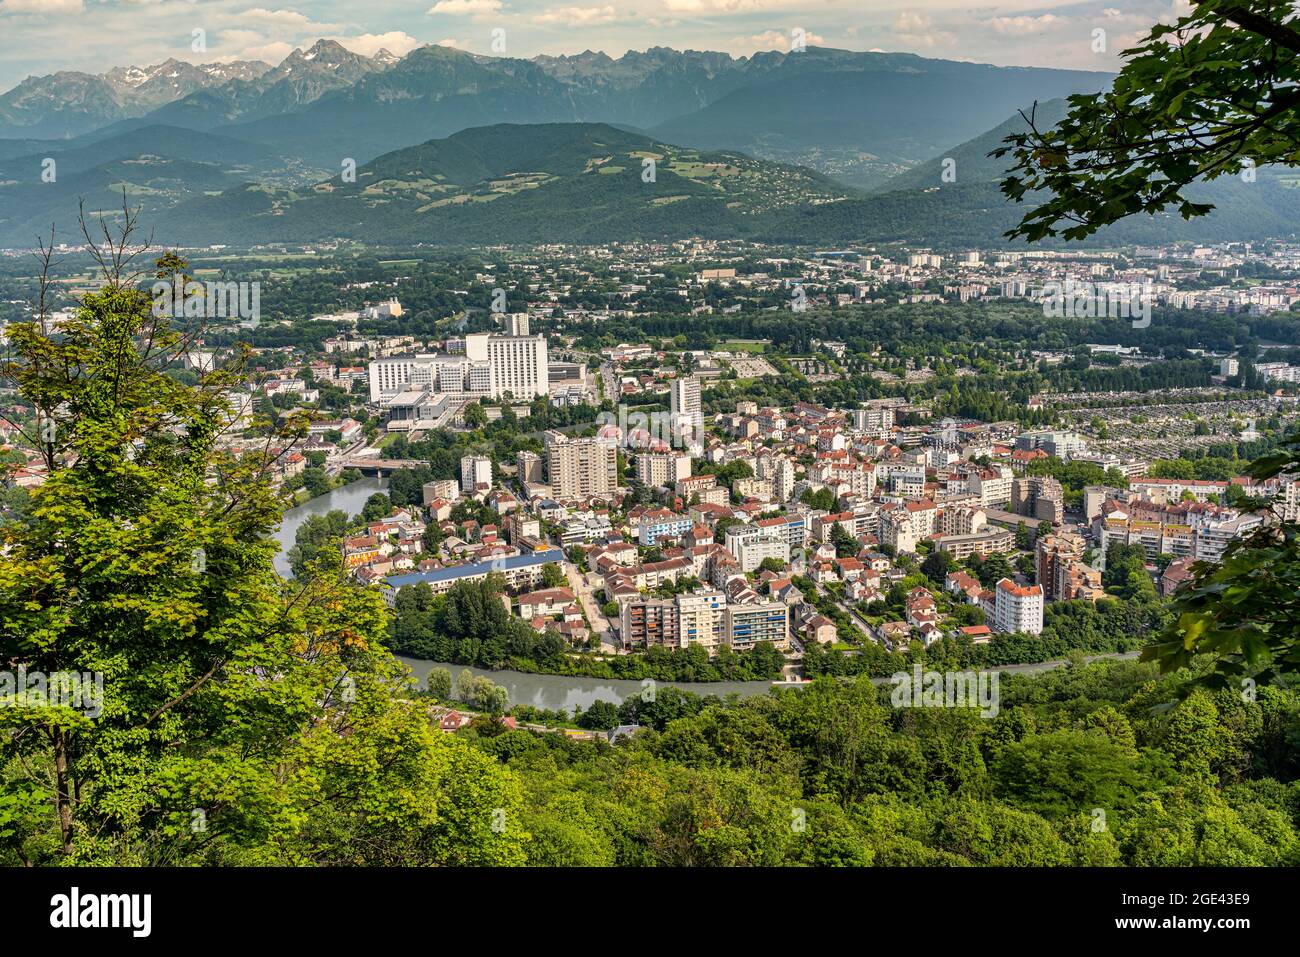 Die Stadt Grenoble ist in allen Ereignissen der französischen Geschichte präsent. Heute ist es das Zentrum verschiedener sozialer und wissenschaftlicher Fortschritte.Grenoble, Frankreich Stockfoto